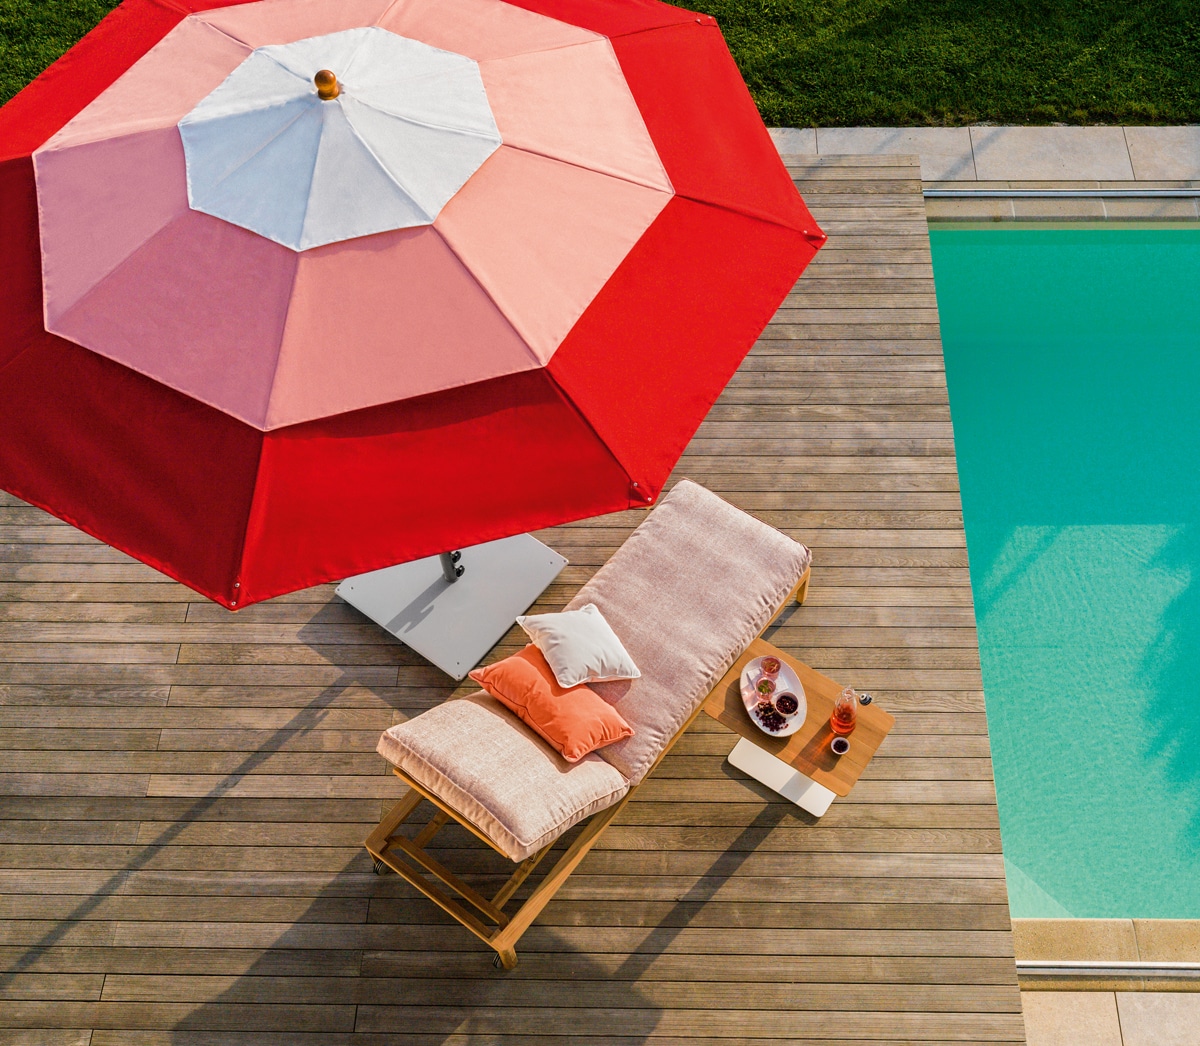 Vogelperspektive auf Liegestuhl mit Sonnenschirm neben Pool